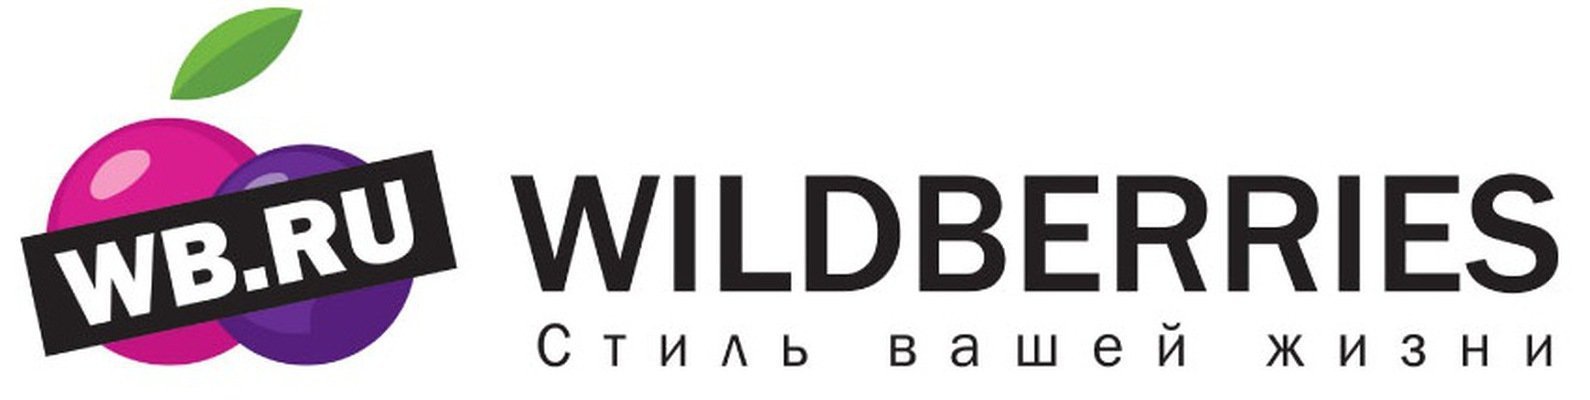 Вайлдберриз хотят закрыть. Wildberries лого. WB логотип вайлдберриз. Надпись Wildberries. Логотип ва.